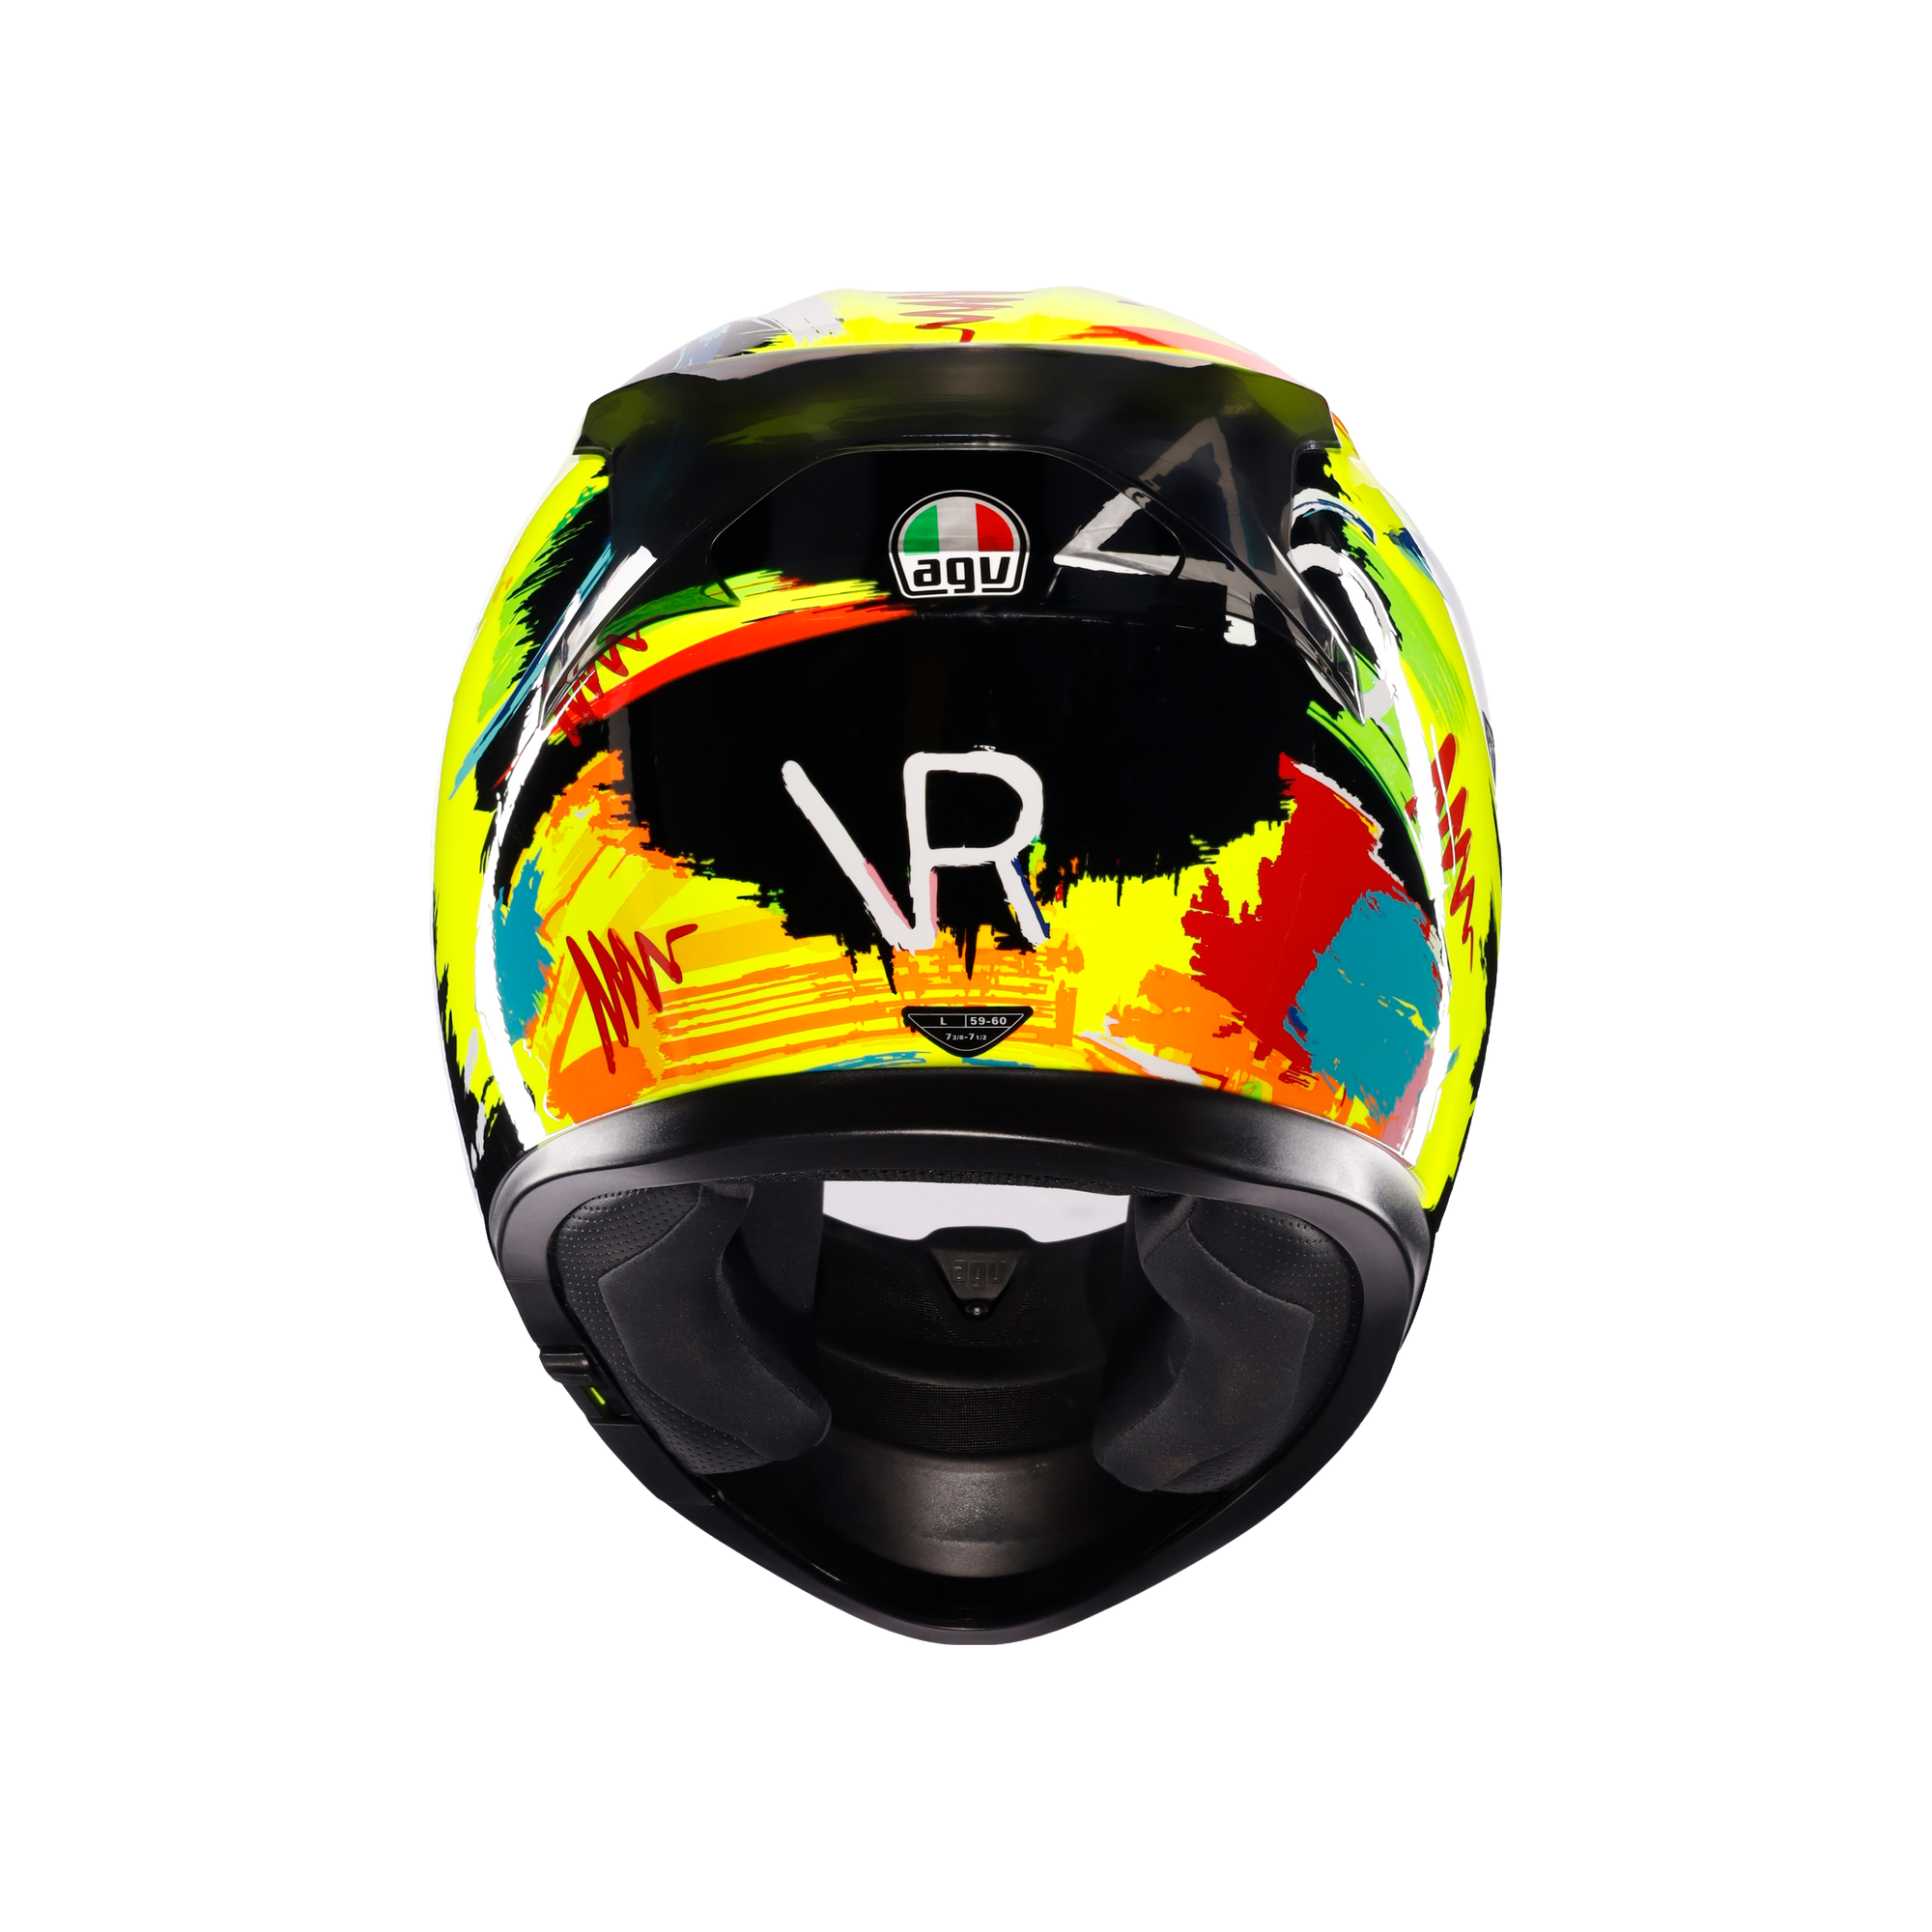 フルフェイスヘルメット | K3 AGV JIST MPLK Asian Fit 003-ROSSI WINTER TEST 2019 SG認証